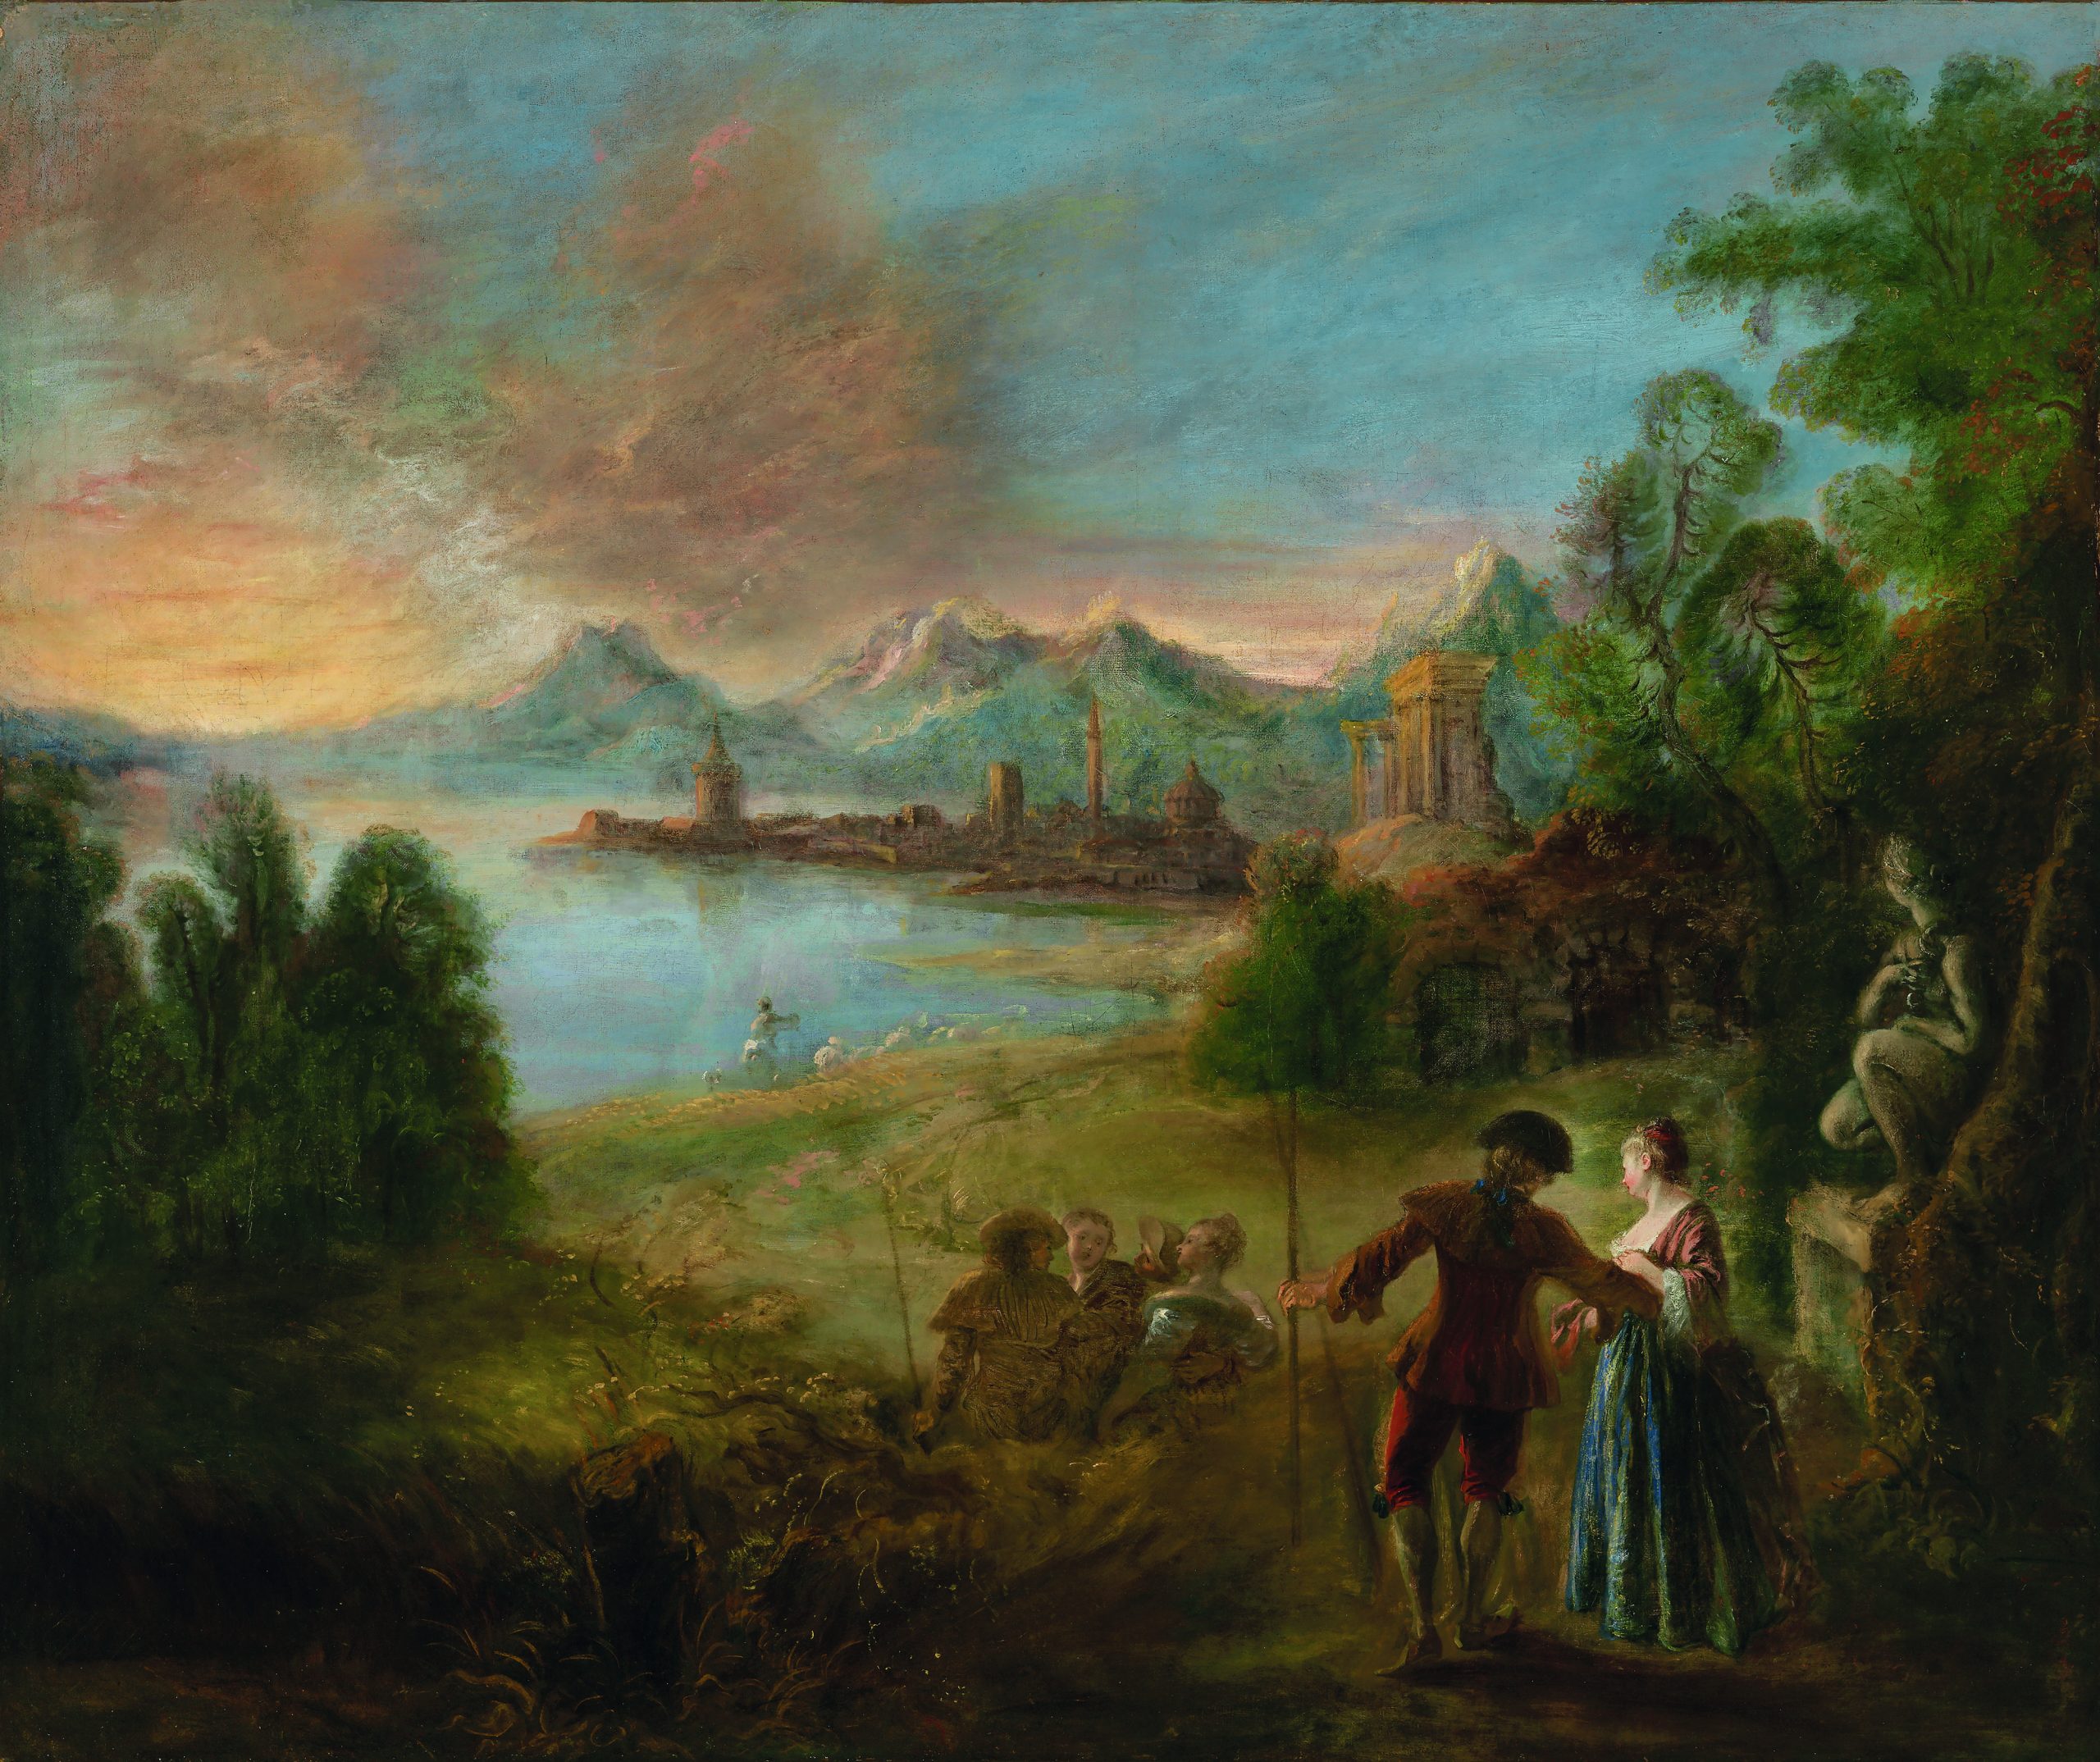 Christie’s. All’asta un raro dipinto di Antoine Watteau, sconosciuto ma segretamente fondamentale